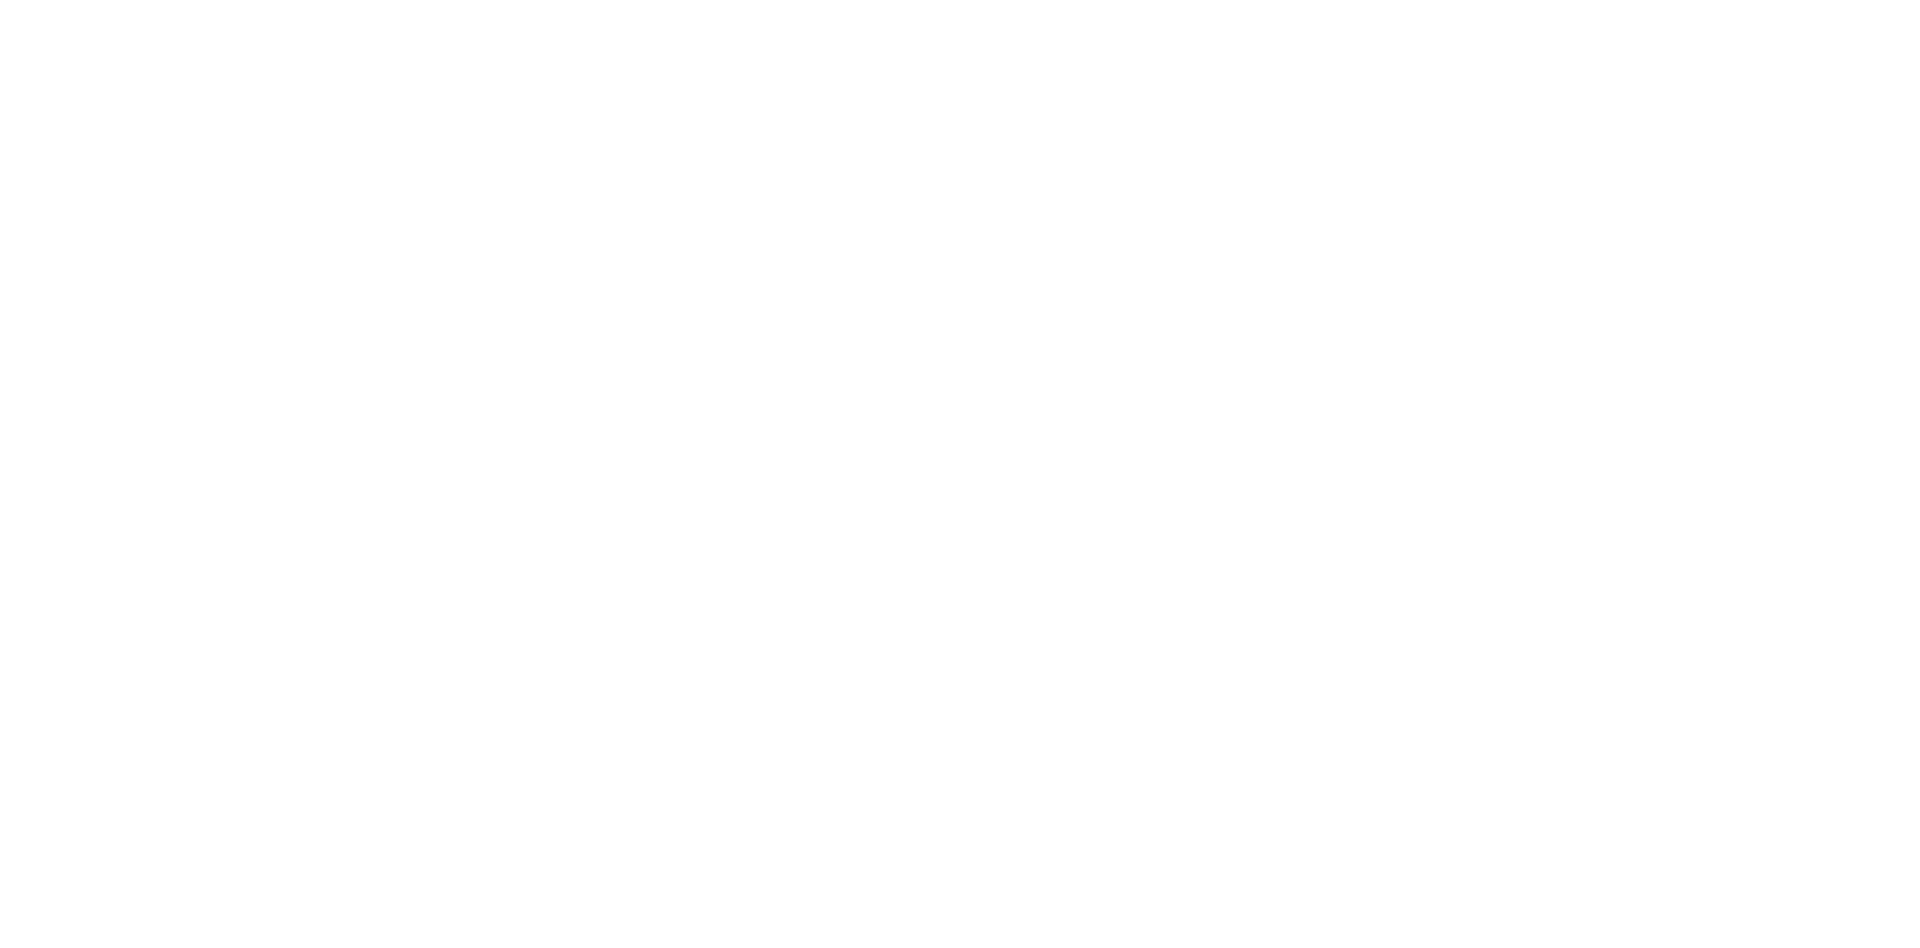 Sammath band logo